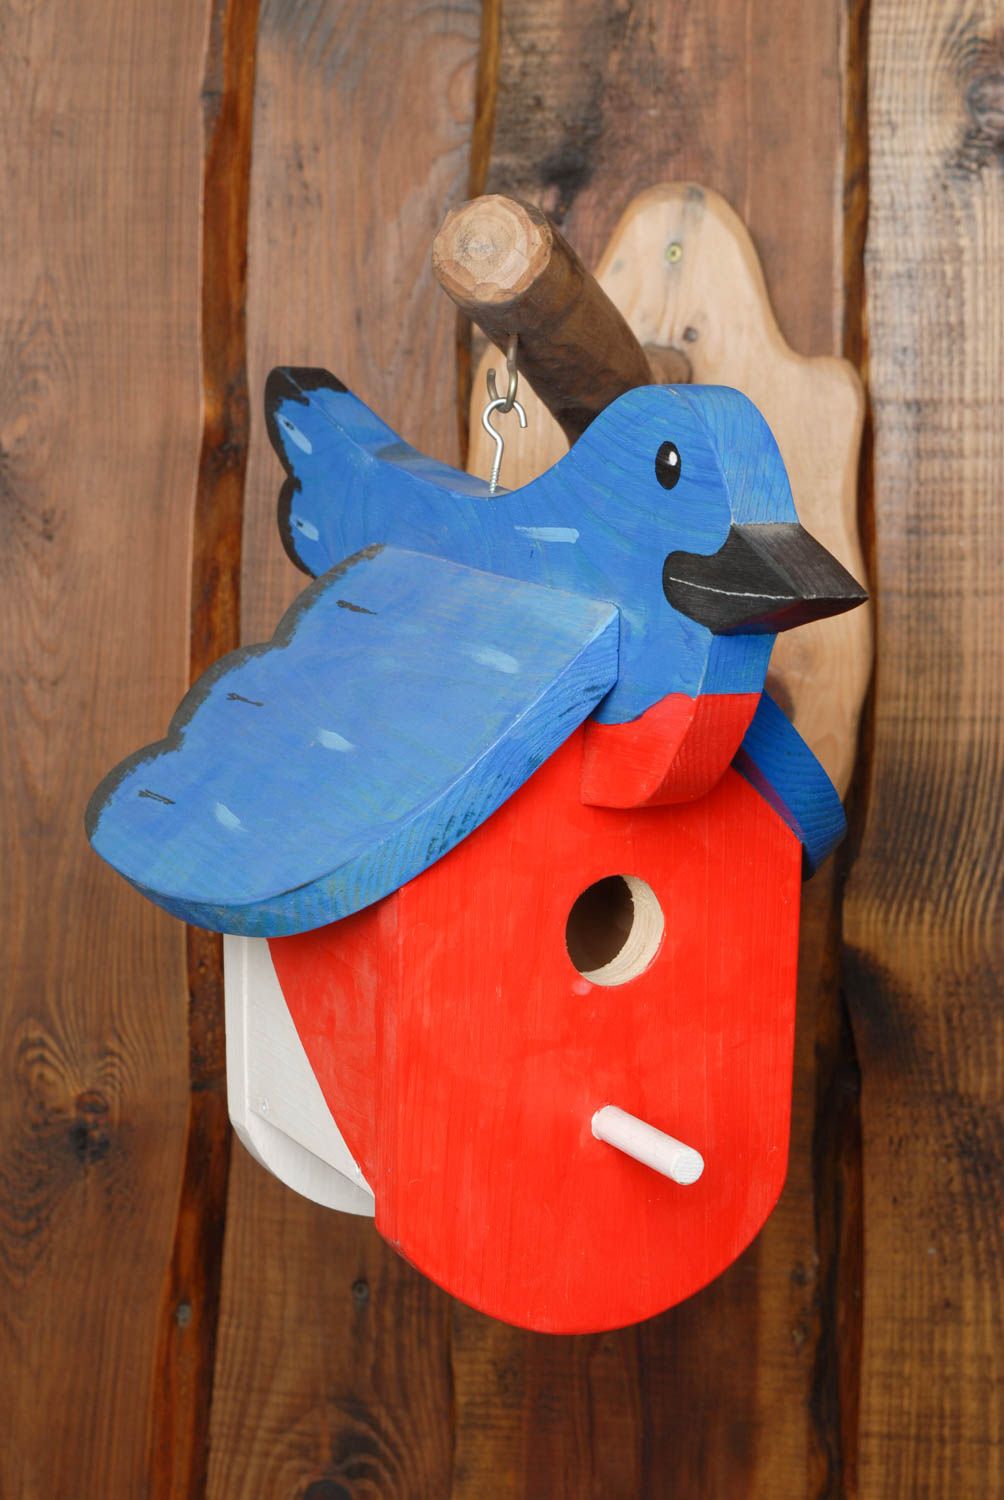 Painted wooden bird feeder photo 1